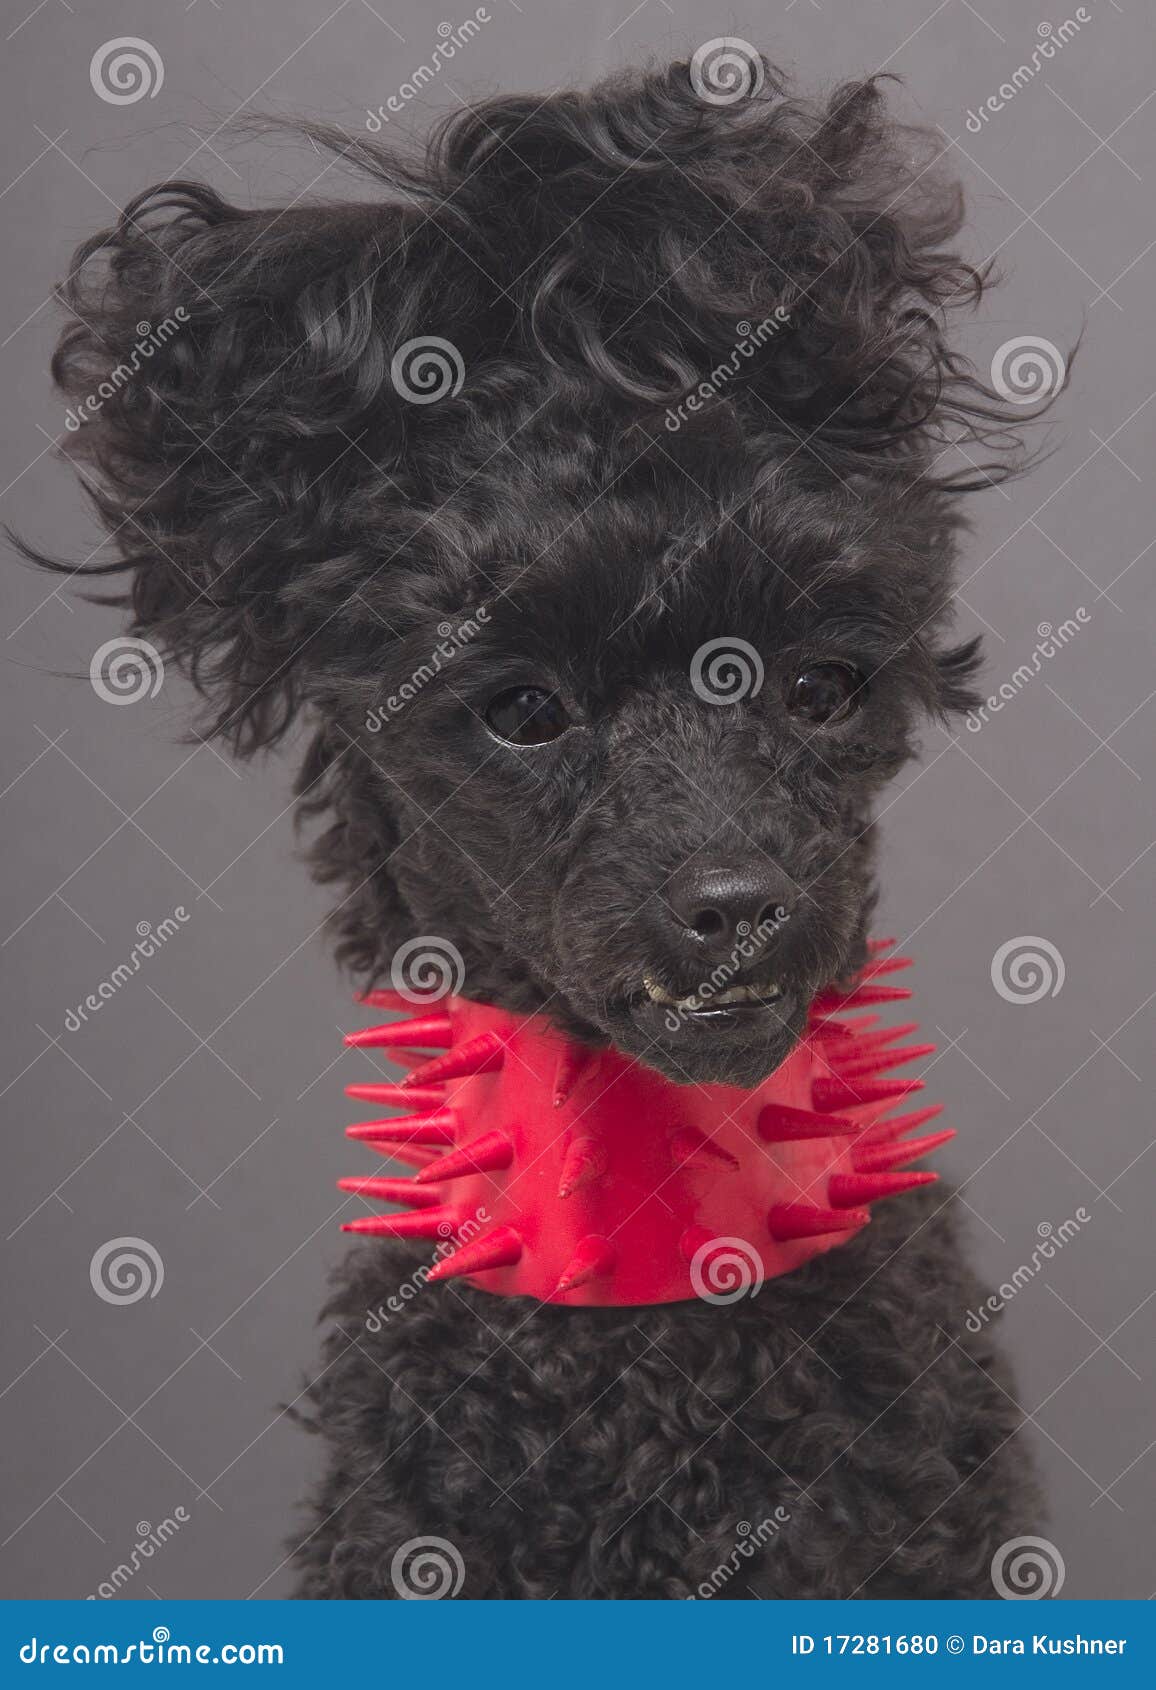 dog in spiky collar